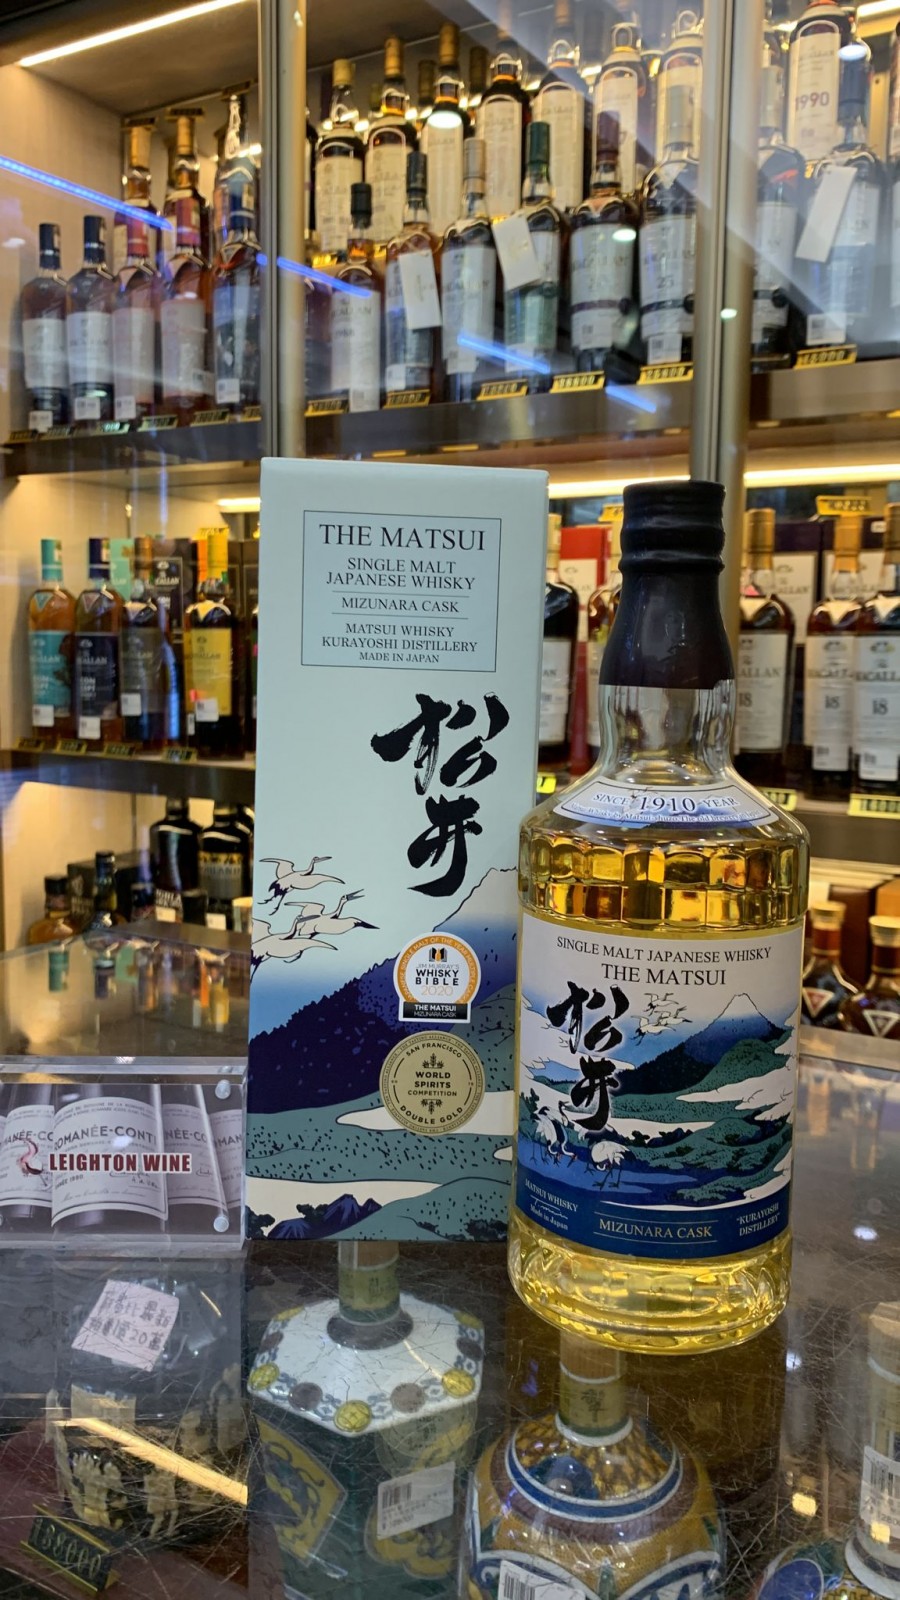 Matsui Mizunara Cask Single Malt Japanese Whisky 700ml